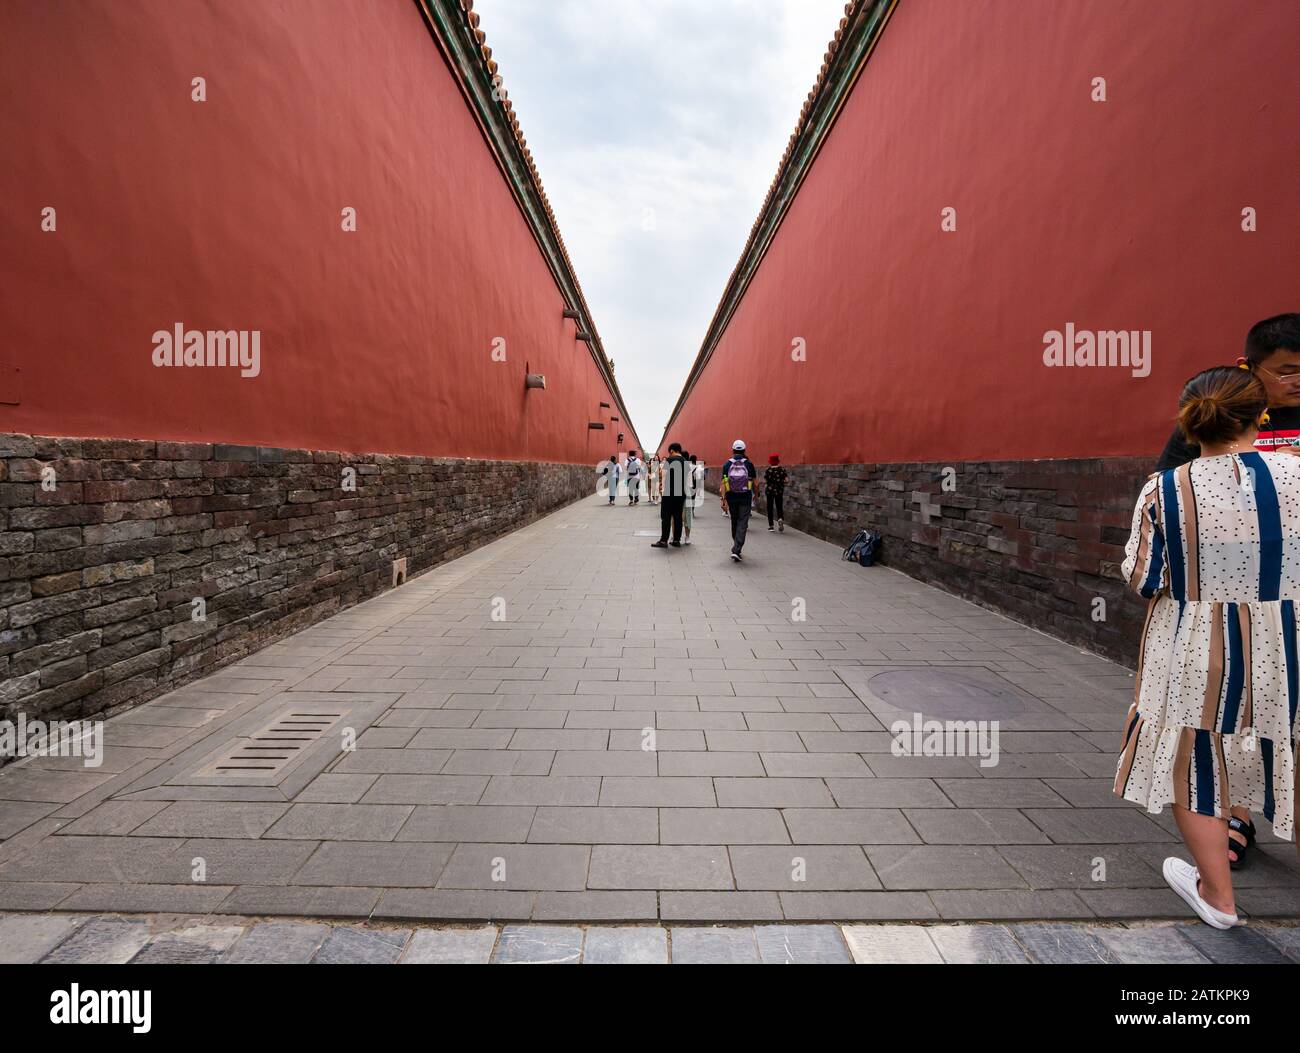 Lange Gasse, die den Gehweg zwischen hohen Wänden Von Gerichten teilt, Verbotene Stadt, Peking, China, Asien Stockfoto